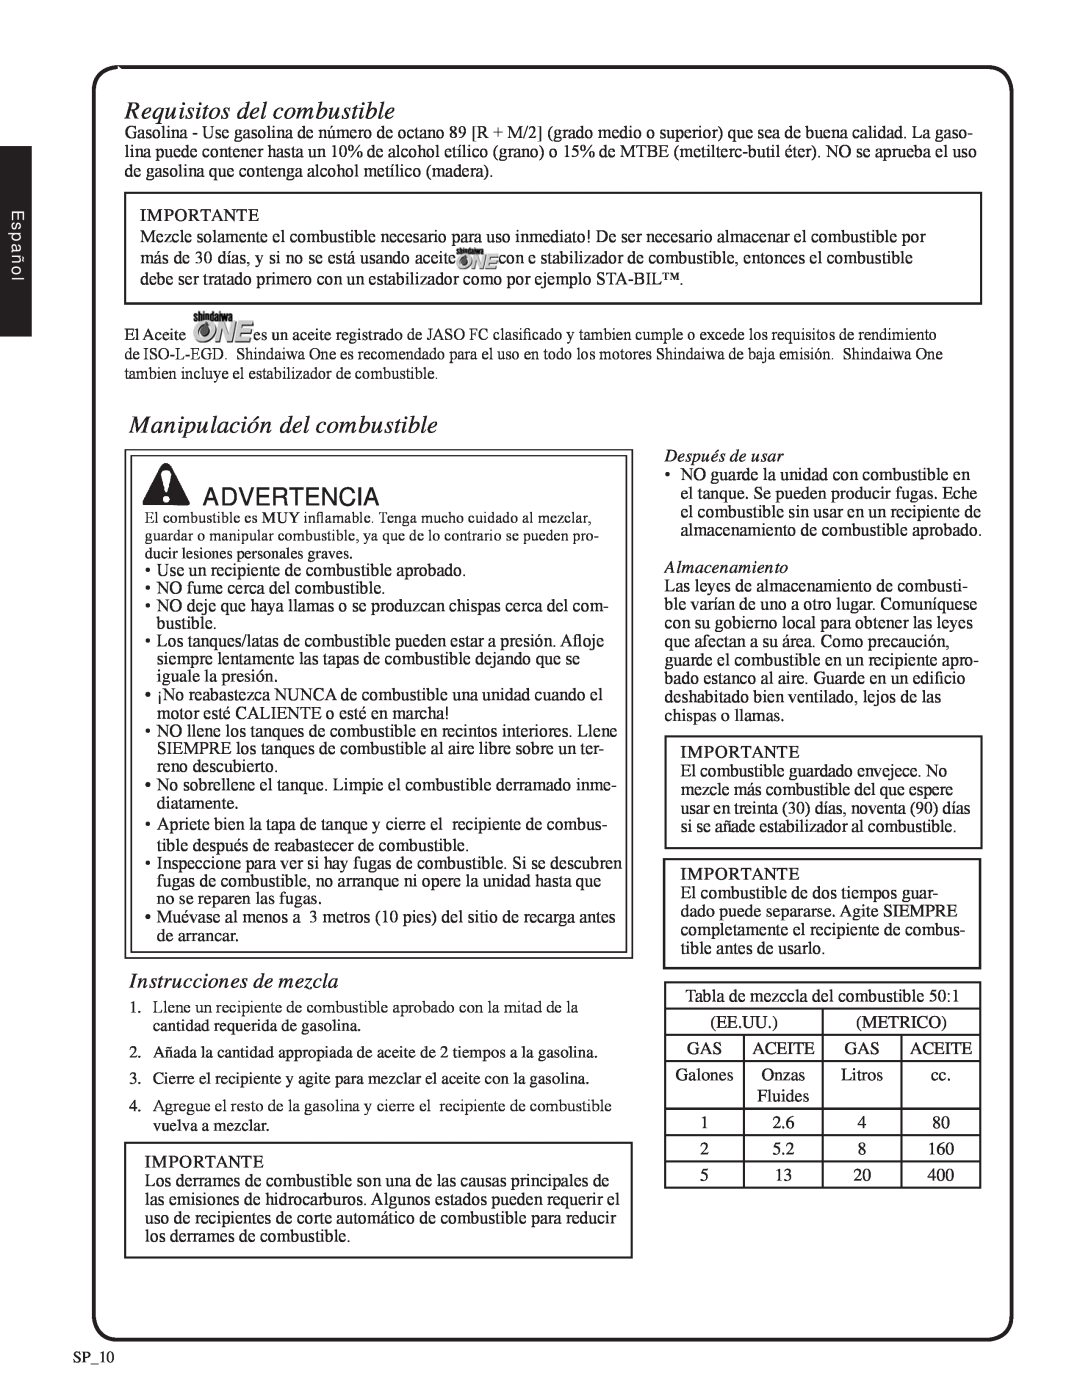 Shindaiwa EB212 Requisitos del combustible, Manipulación del combustible, Advertencia, Instrucciones de mezcla, Español 